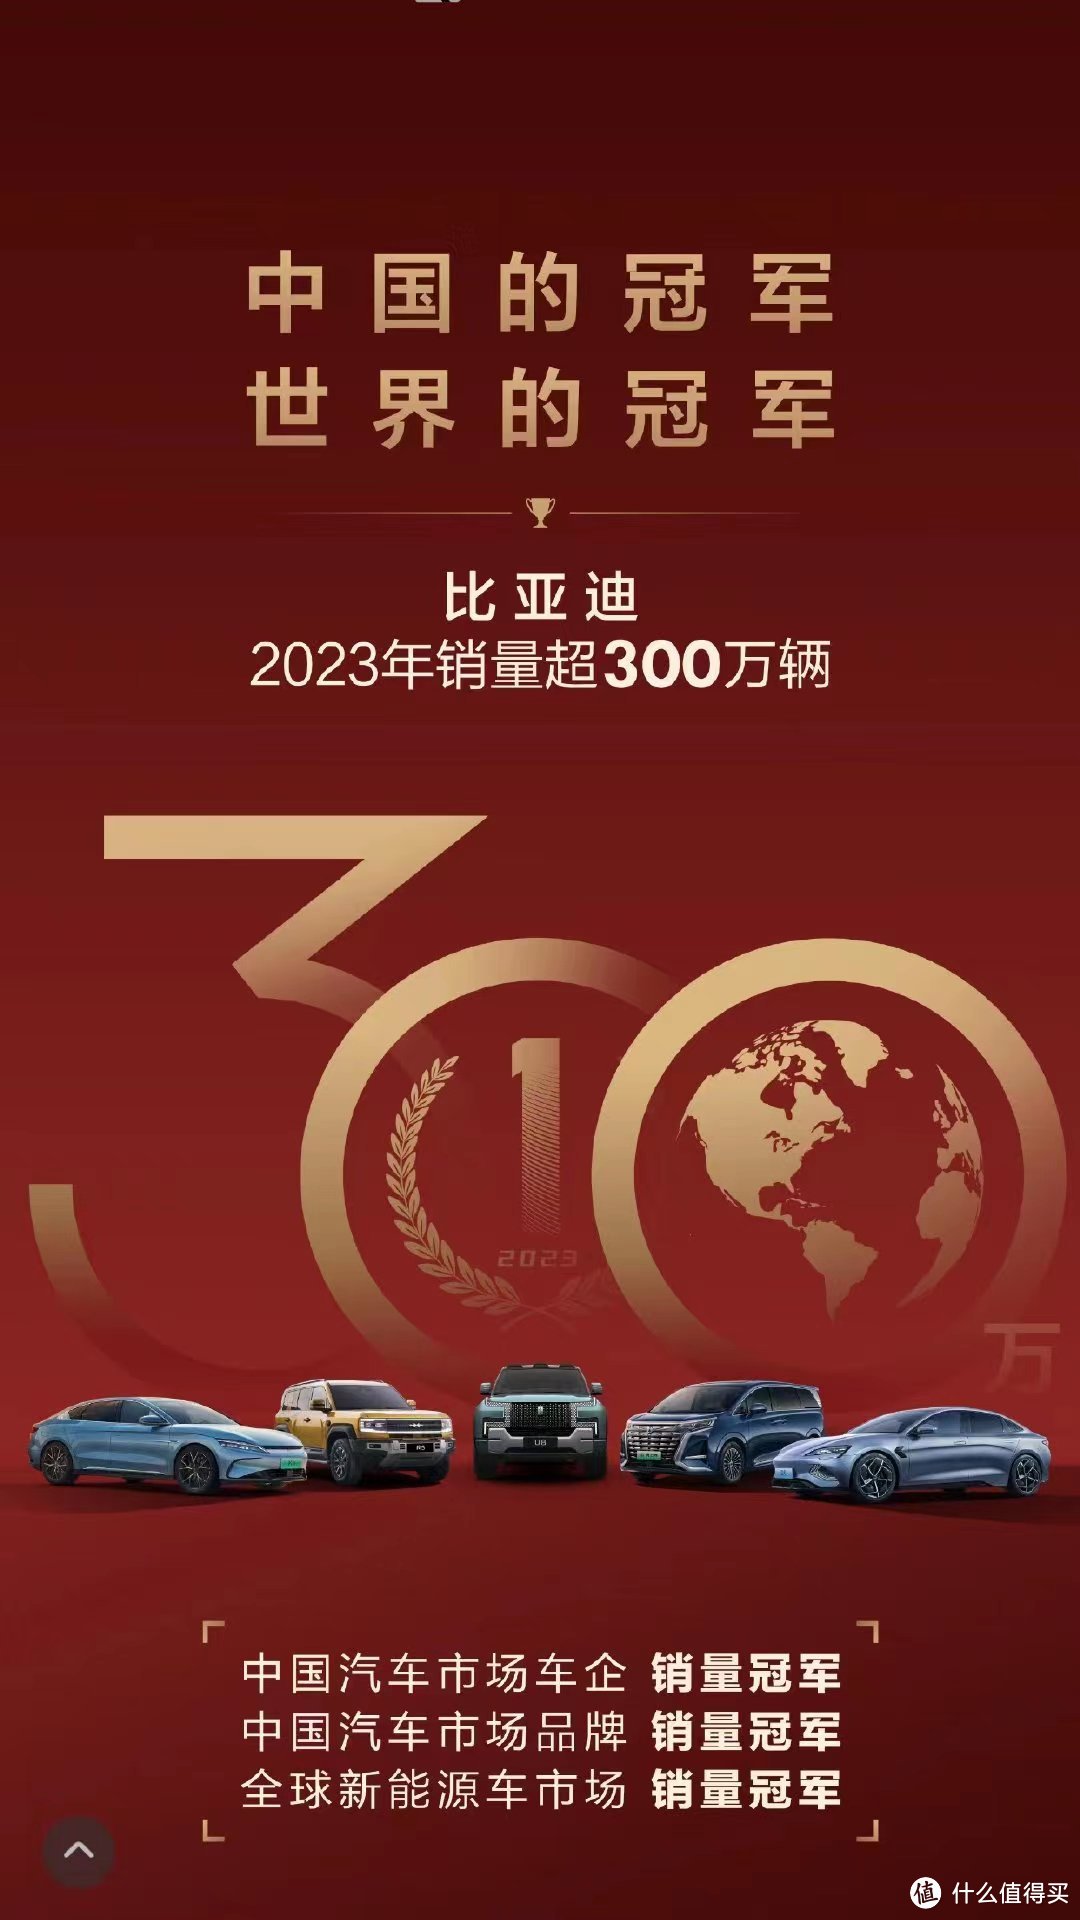 不加定语的销量冠军！比亚迪大卖302万辆，创造中国车企销量新纪录！